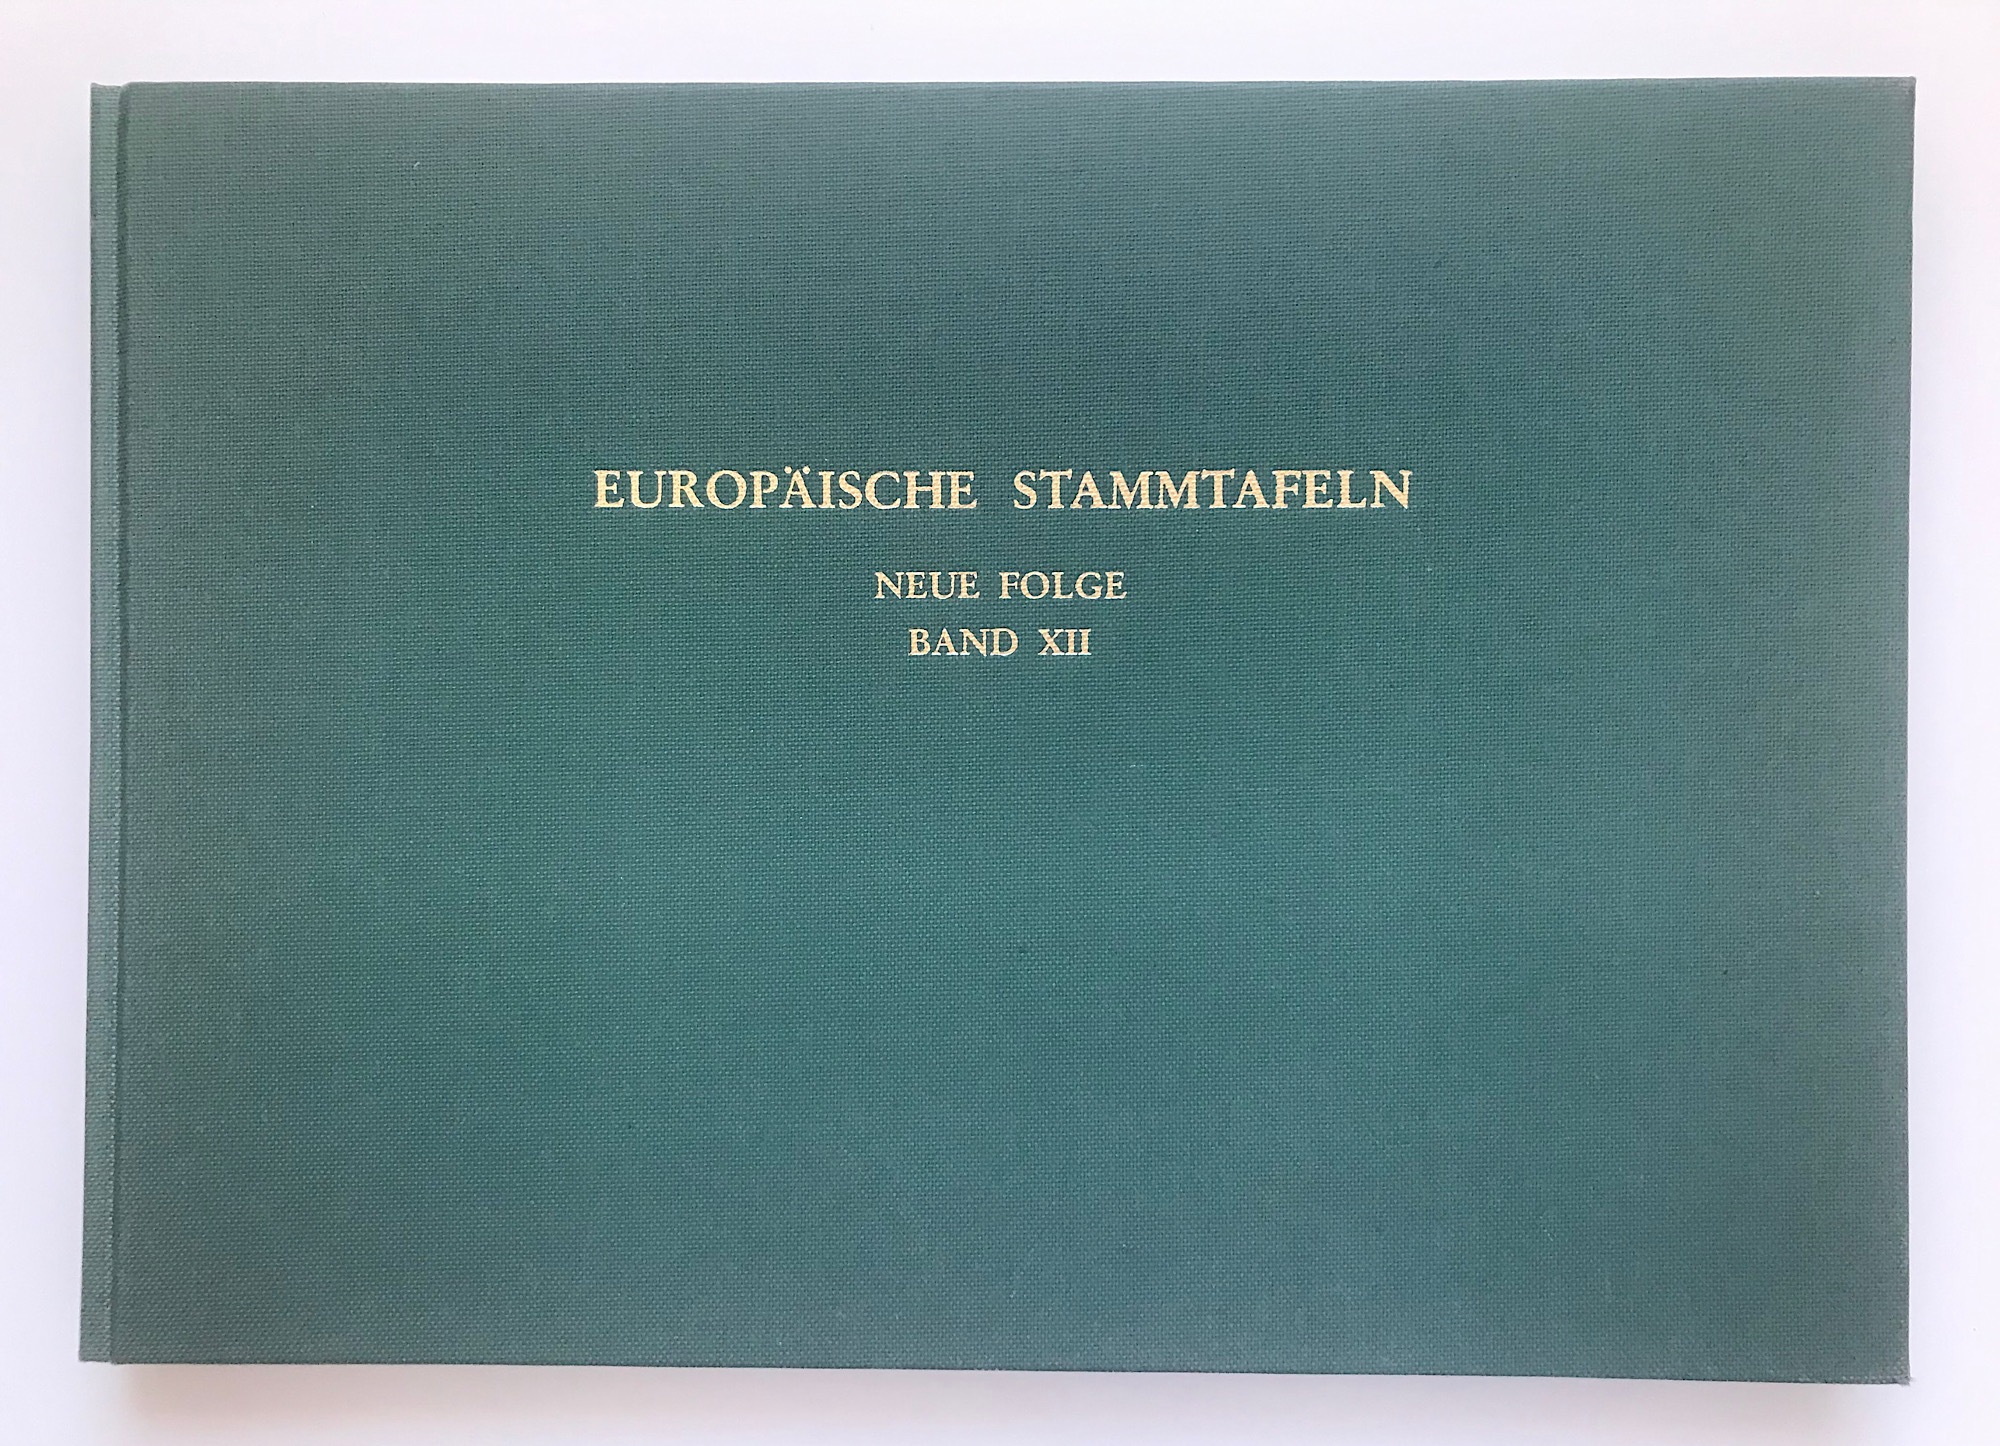 Europäische Stammtafeln, Stammtafeln zur Geschichte der europäischen Staaten, neue Folge, herausgegeben von Detlev Schwennicke, Band XII, Schwaben.